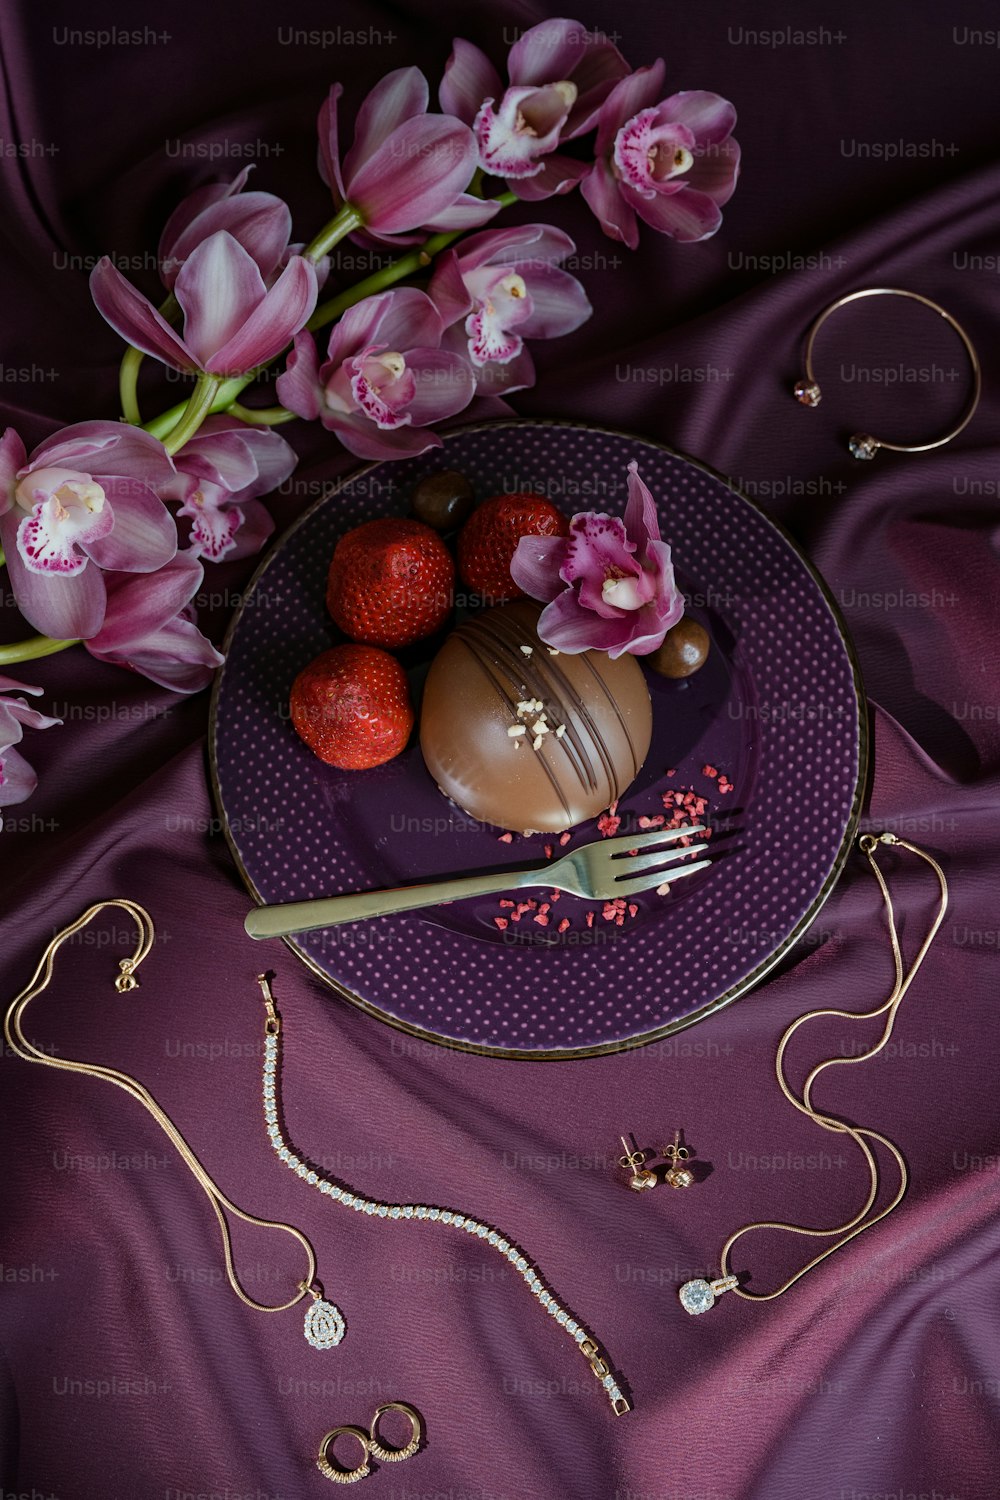 Ein Teller mit einem Schokoladendessert und Blumen darauf